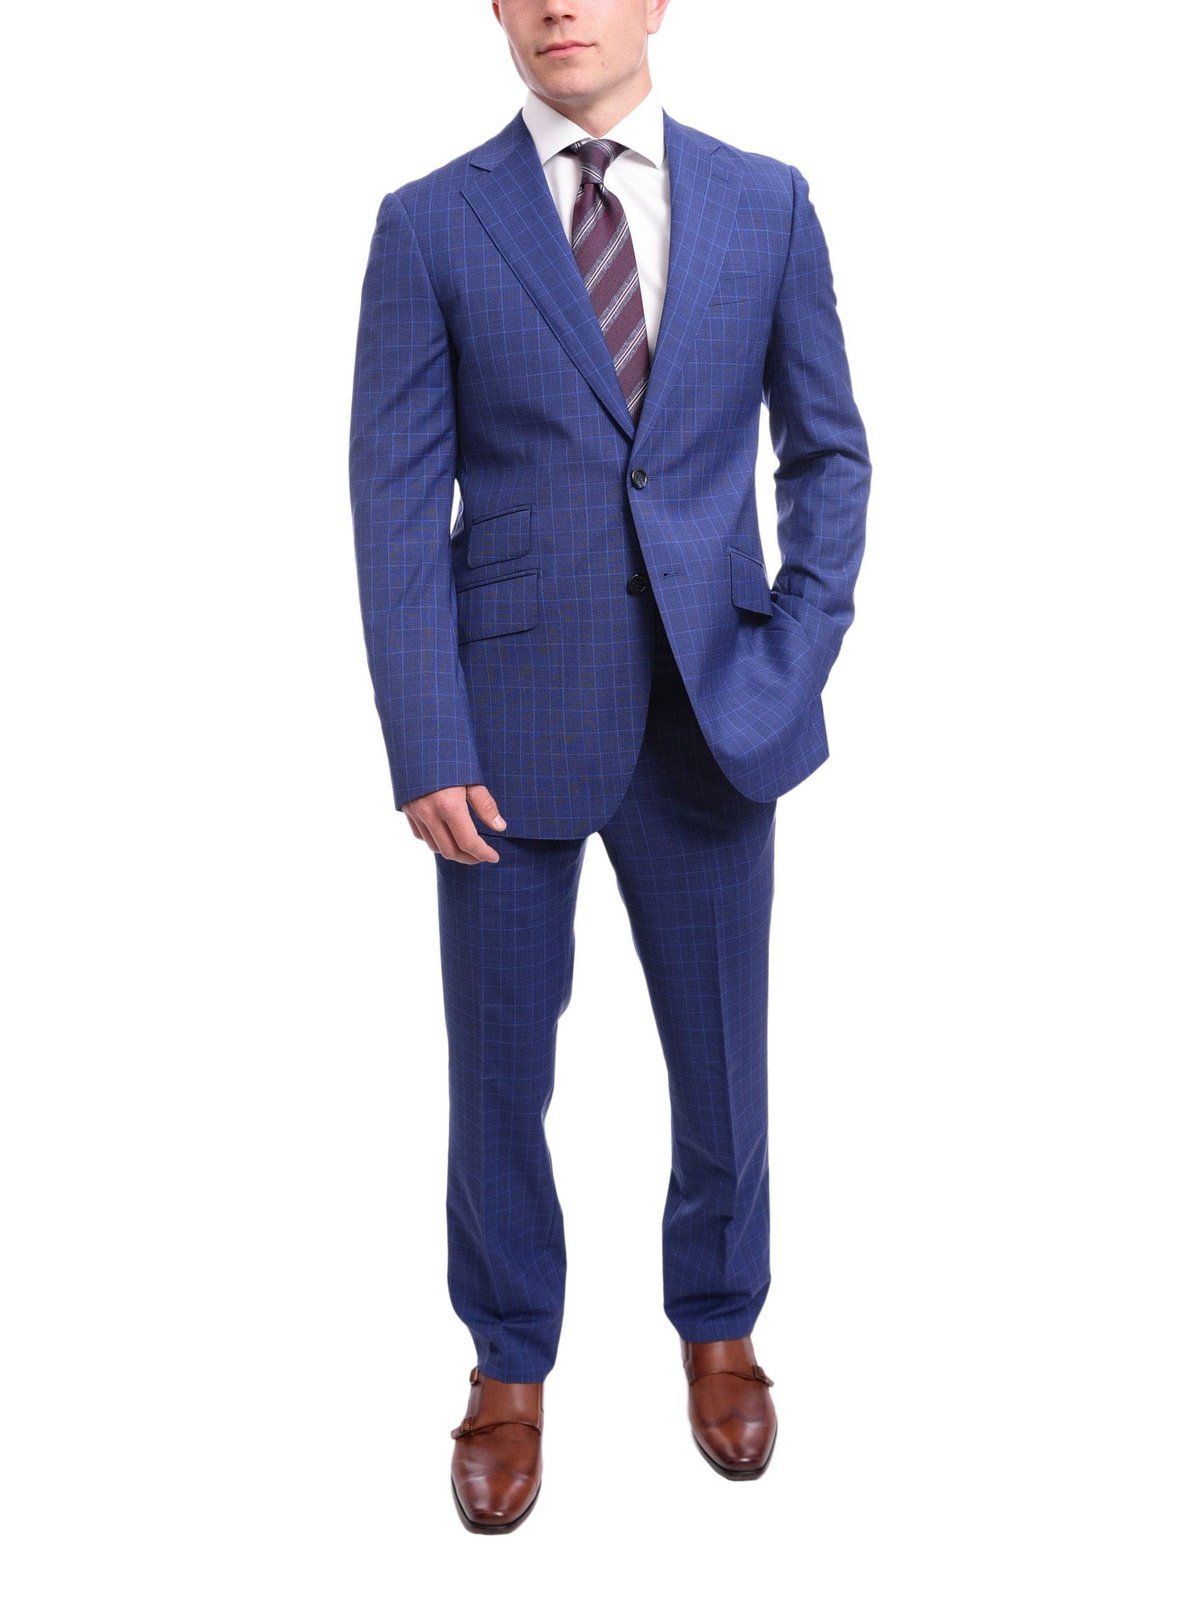 Napoli TWO PIECE SUITS Men&#39;s Napoli Slim Fit Blue Glen Plaid 2 Button Super 150s 100% Italian Wool Suit